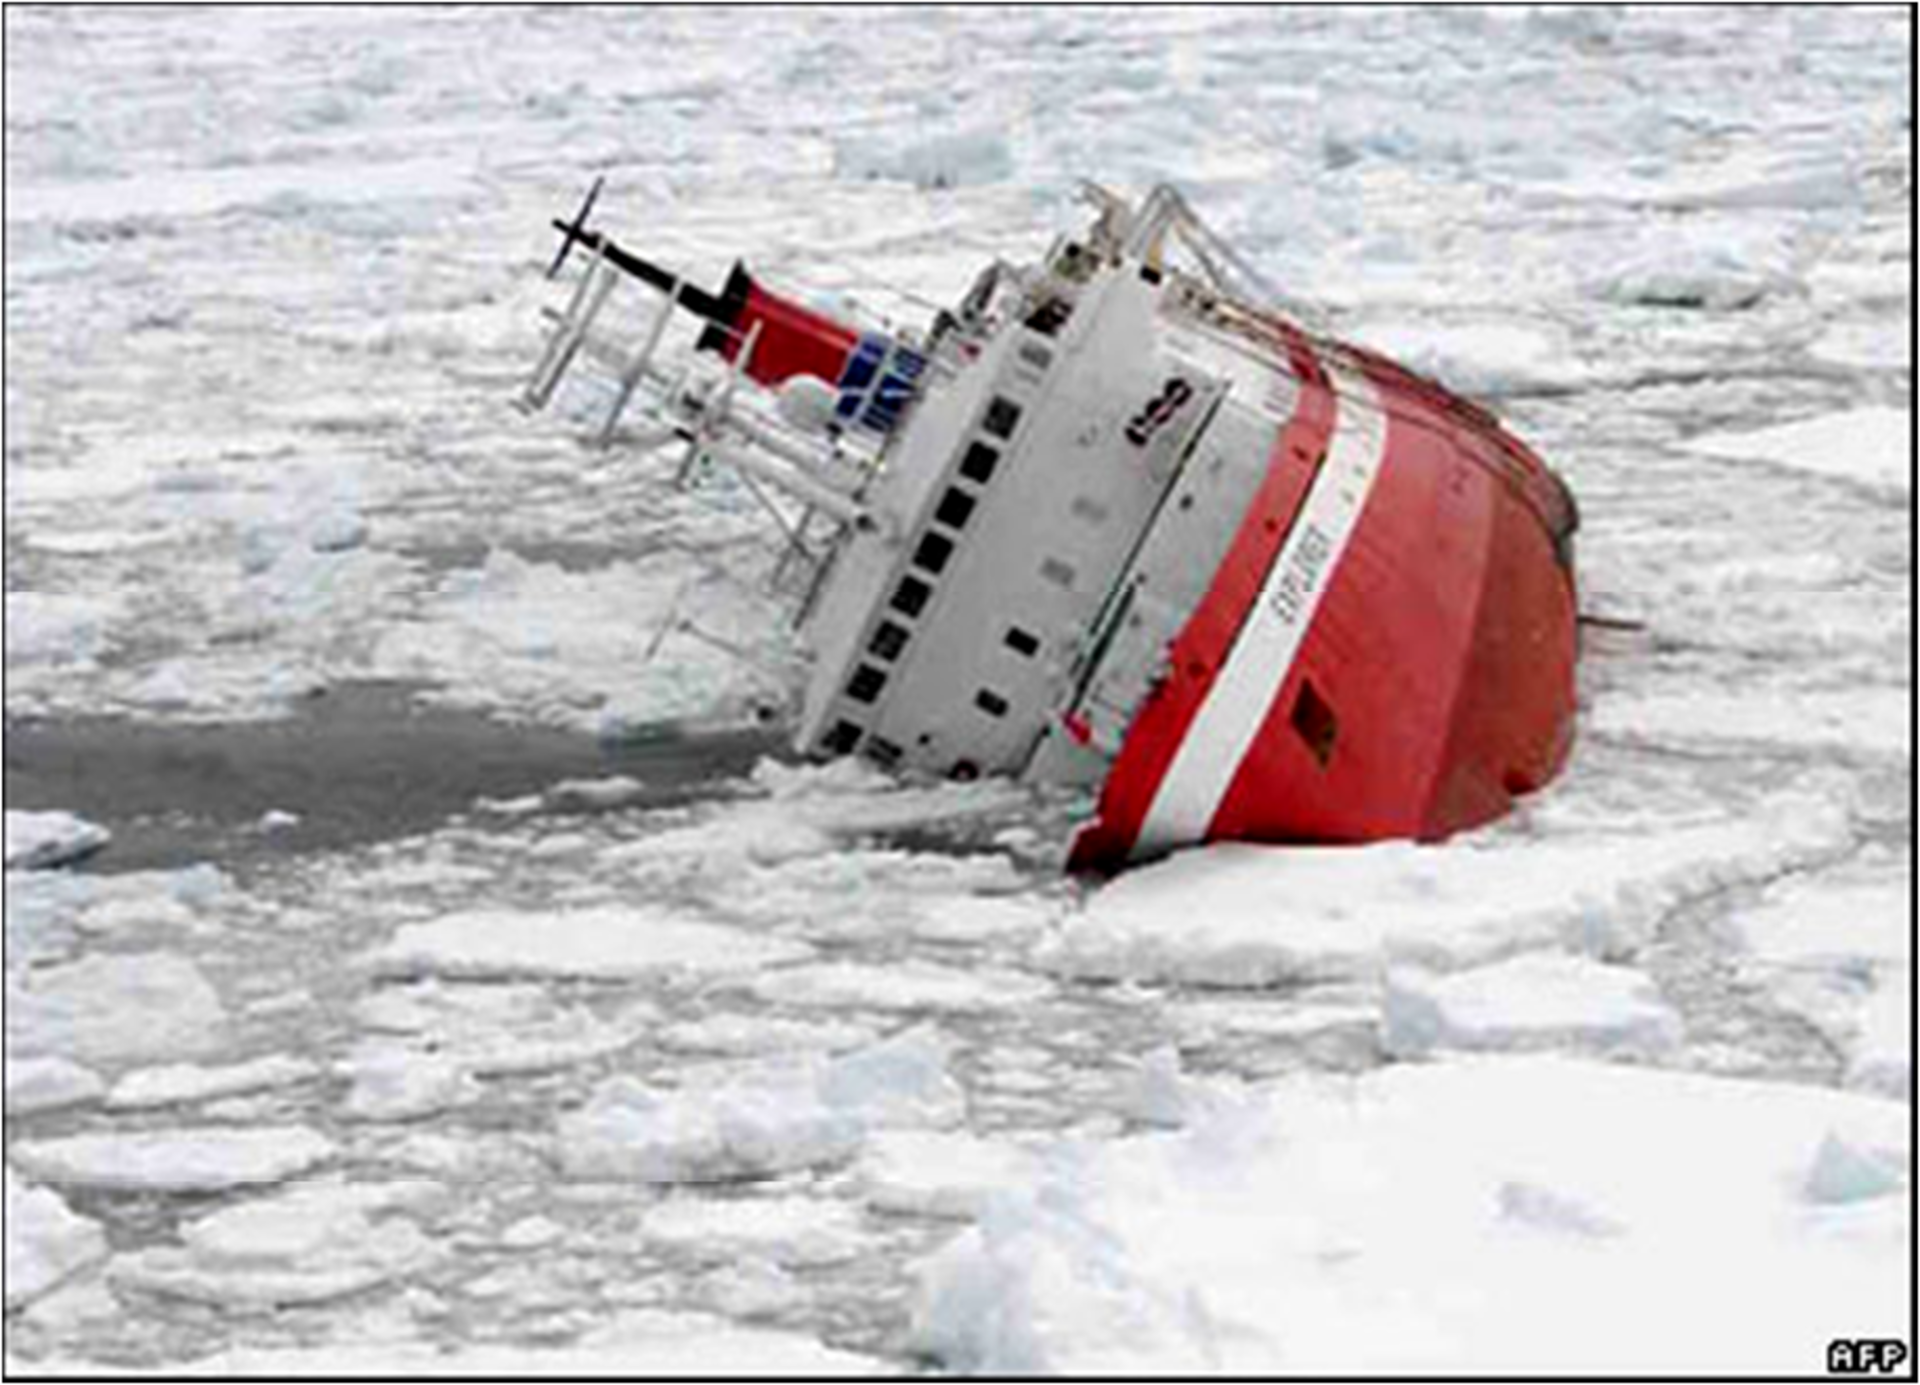 Dangers of the Antarctic Ocean